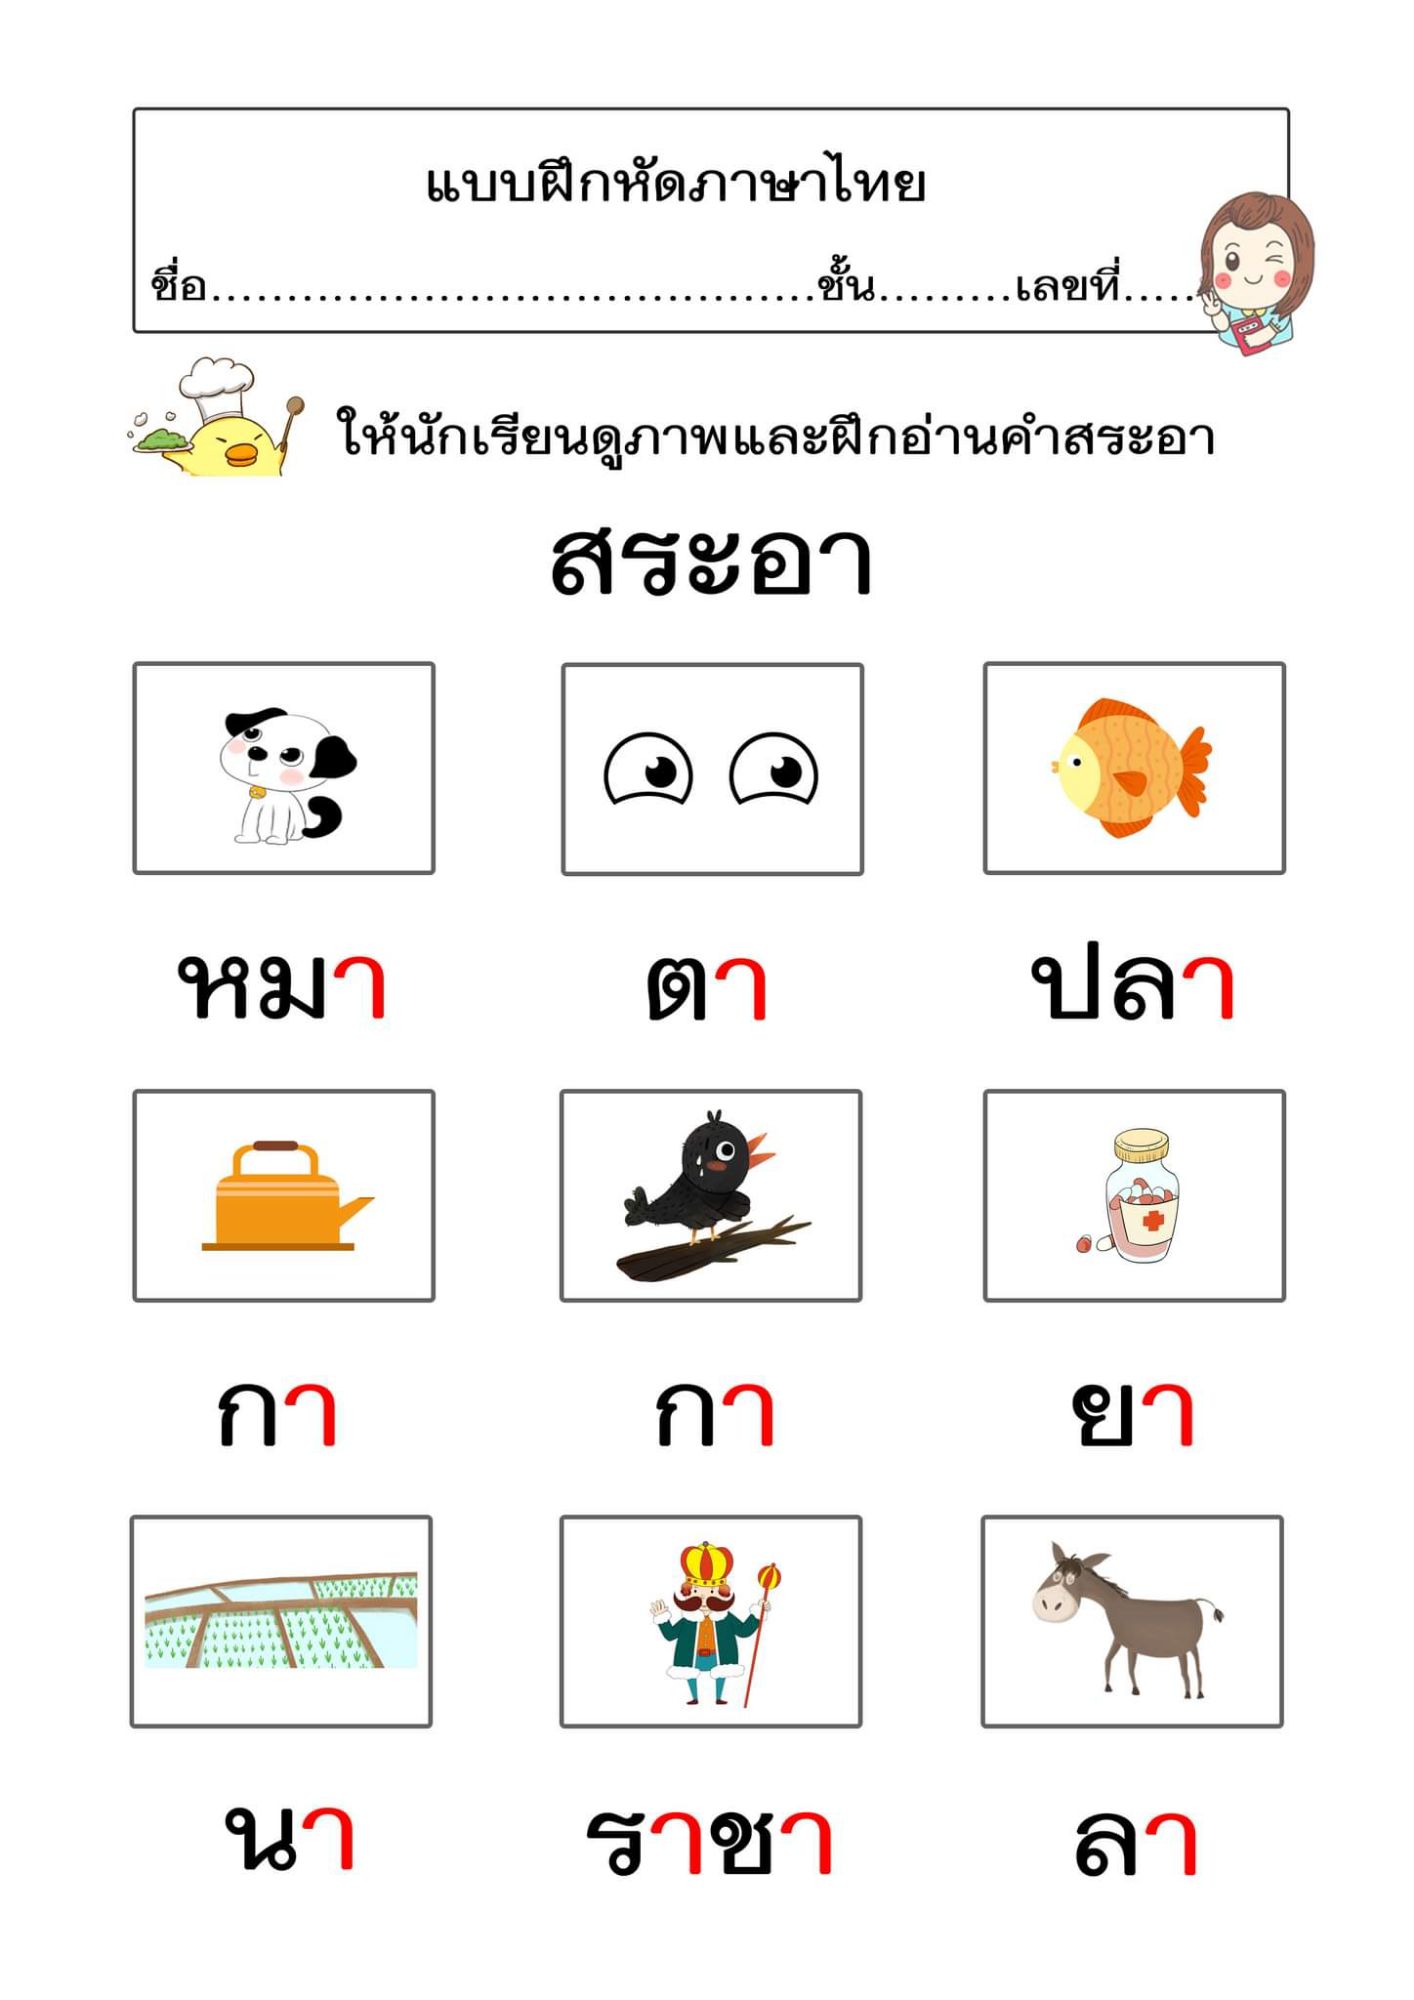 แบบฝึกหัดภาษาไทยป 1 (เหมาะสำหรับฝึกการอ่านการเขียน)